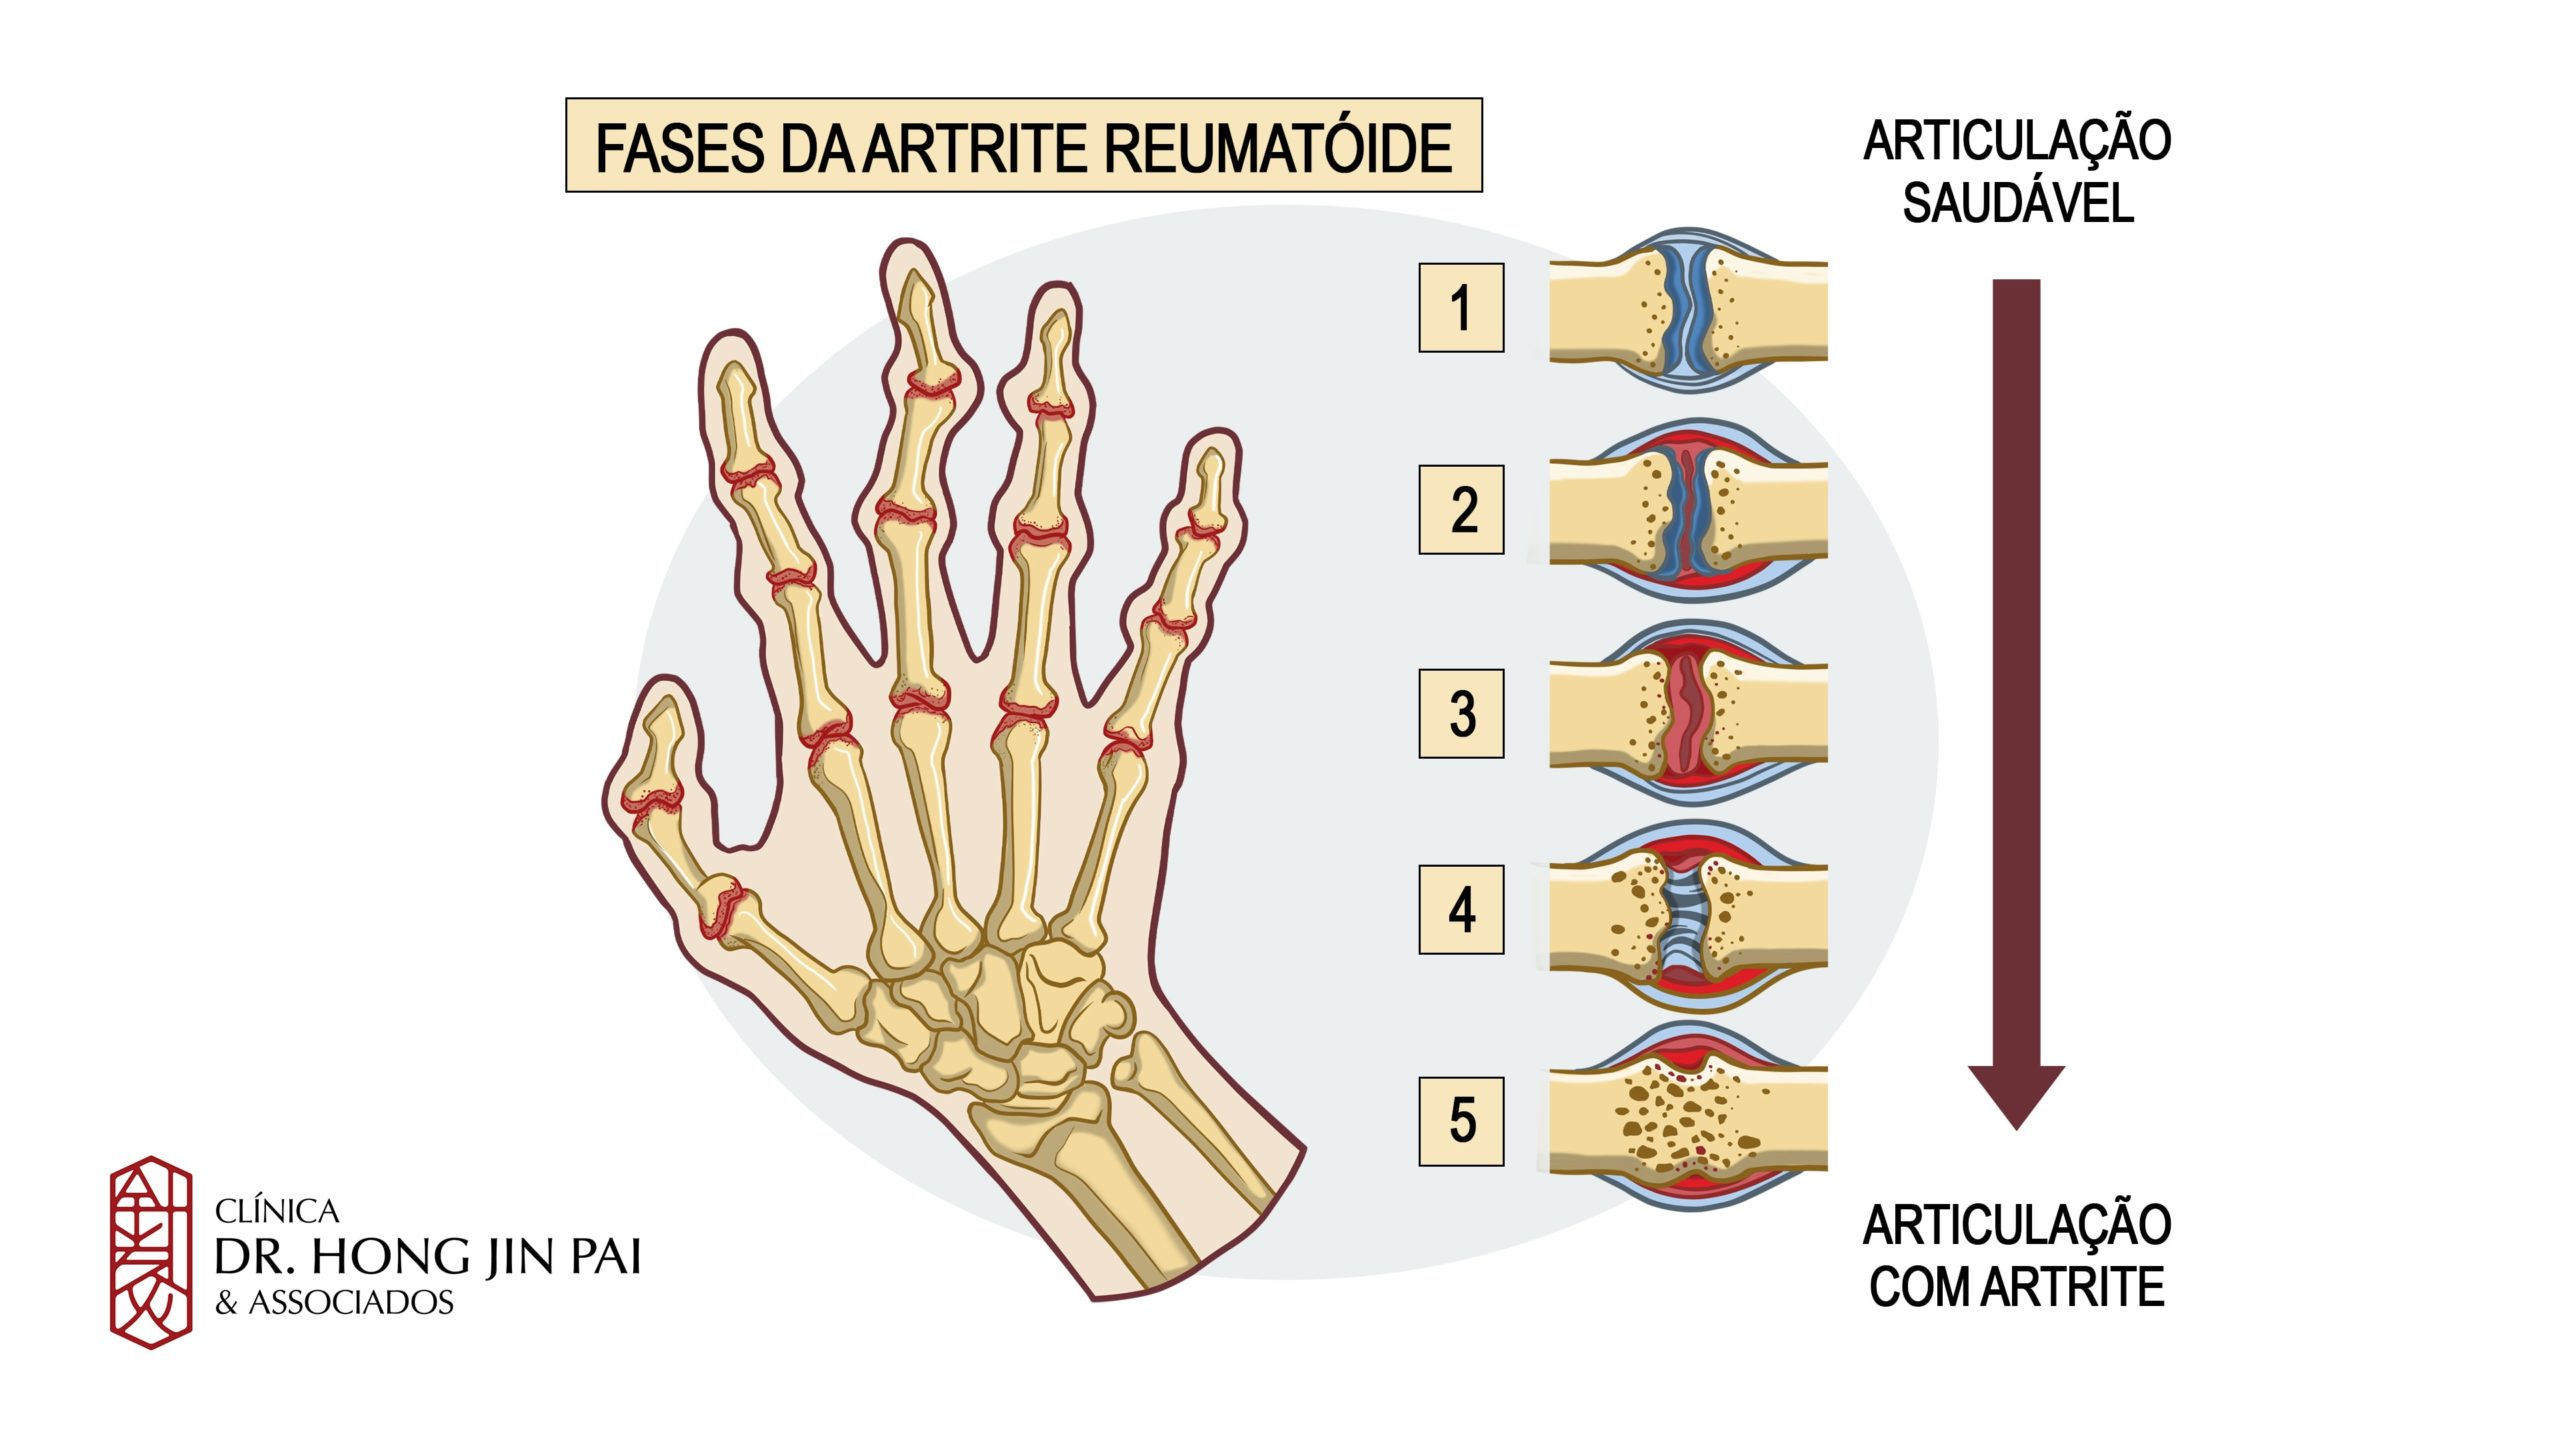 artrite reumatoide é mais comum em mulheres na faixa dos 30 aos 50 anos. Hoje se sabe que seus danos não se limitam às juntas.